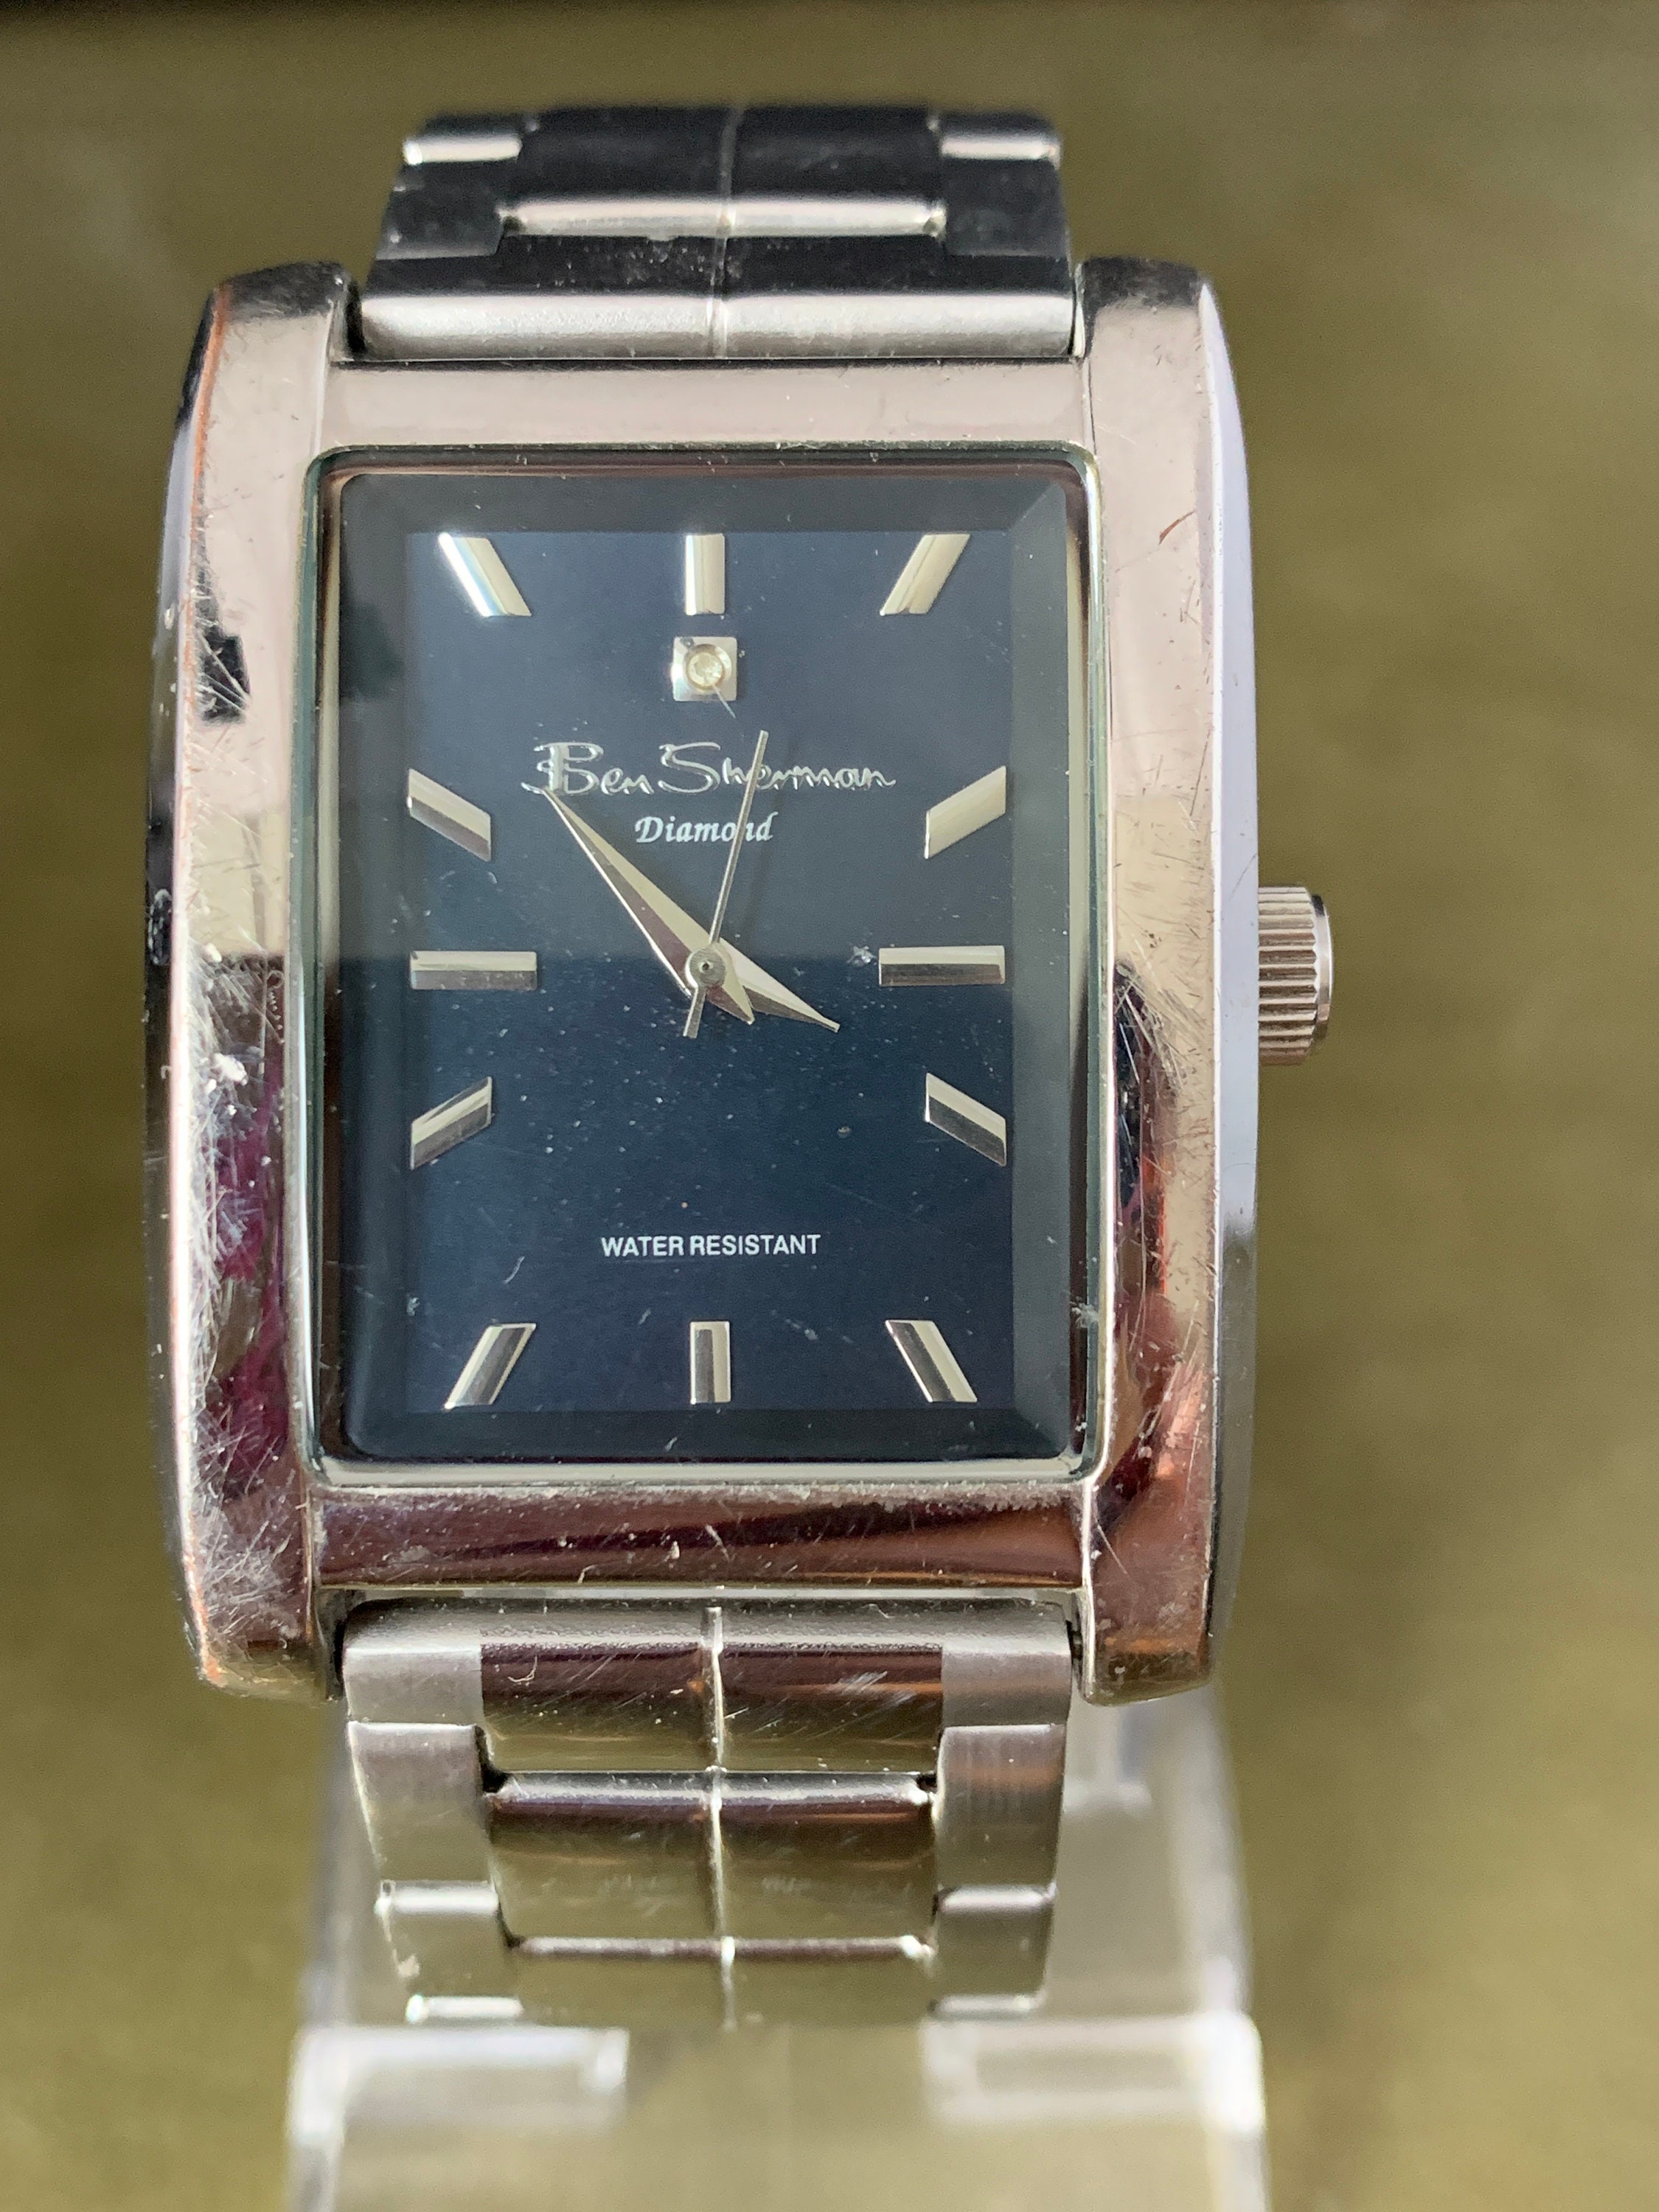 Reloj vintage grande Ben Sherman Diamond de caja rectangular - Etsy España